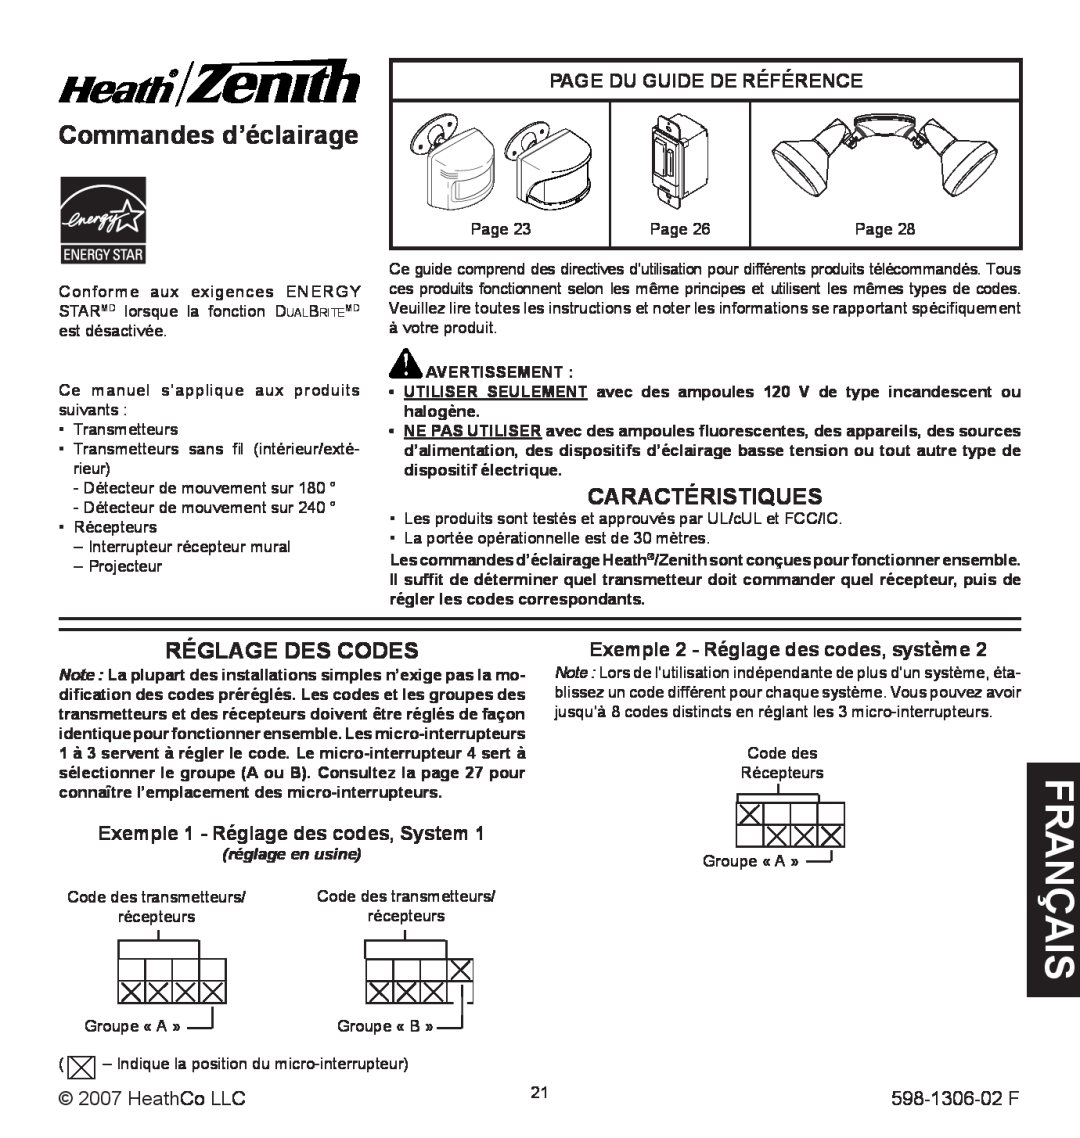 Heath Zenith manual is nça fra, Commandes d’éclairage, Caractéristiques, Réglage Des Codes, HeathCo LLC, 598-1306-02F 